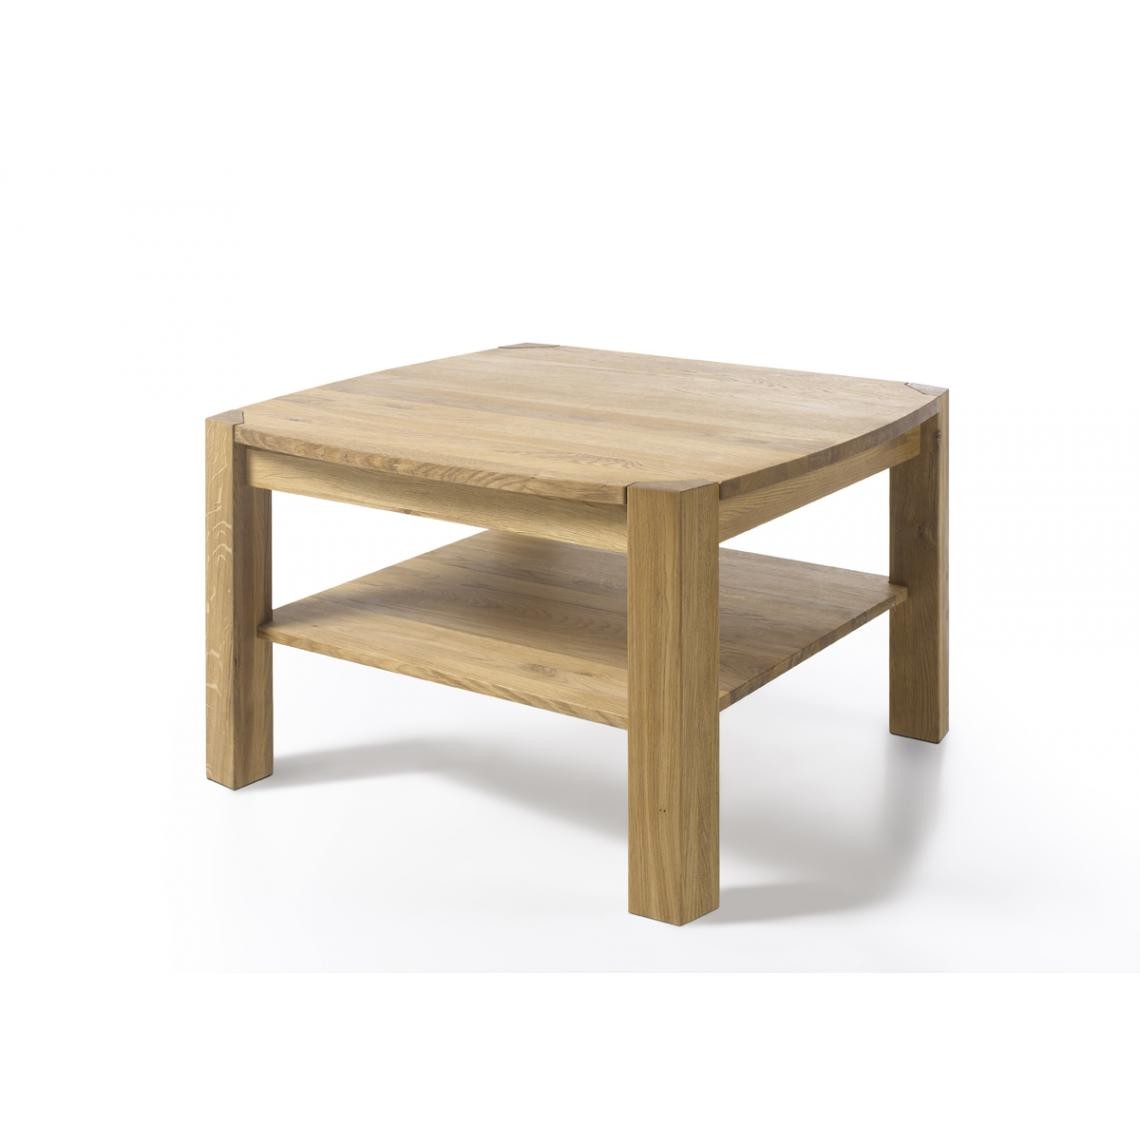 Pegane - Table basse en chêne noueux huilé cire avec tablette - L83 x H55 x P83 cm - Tables basses